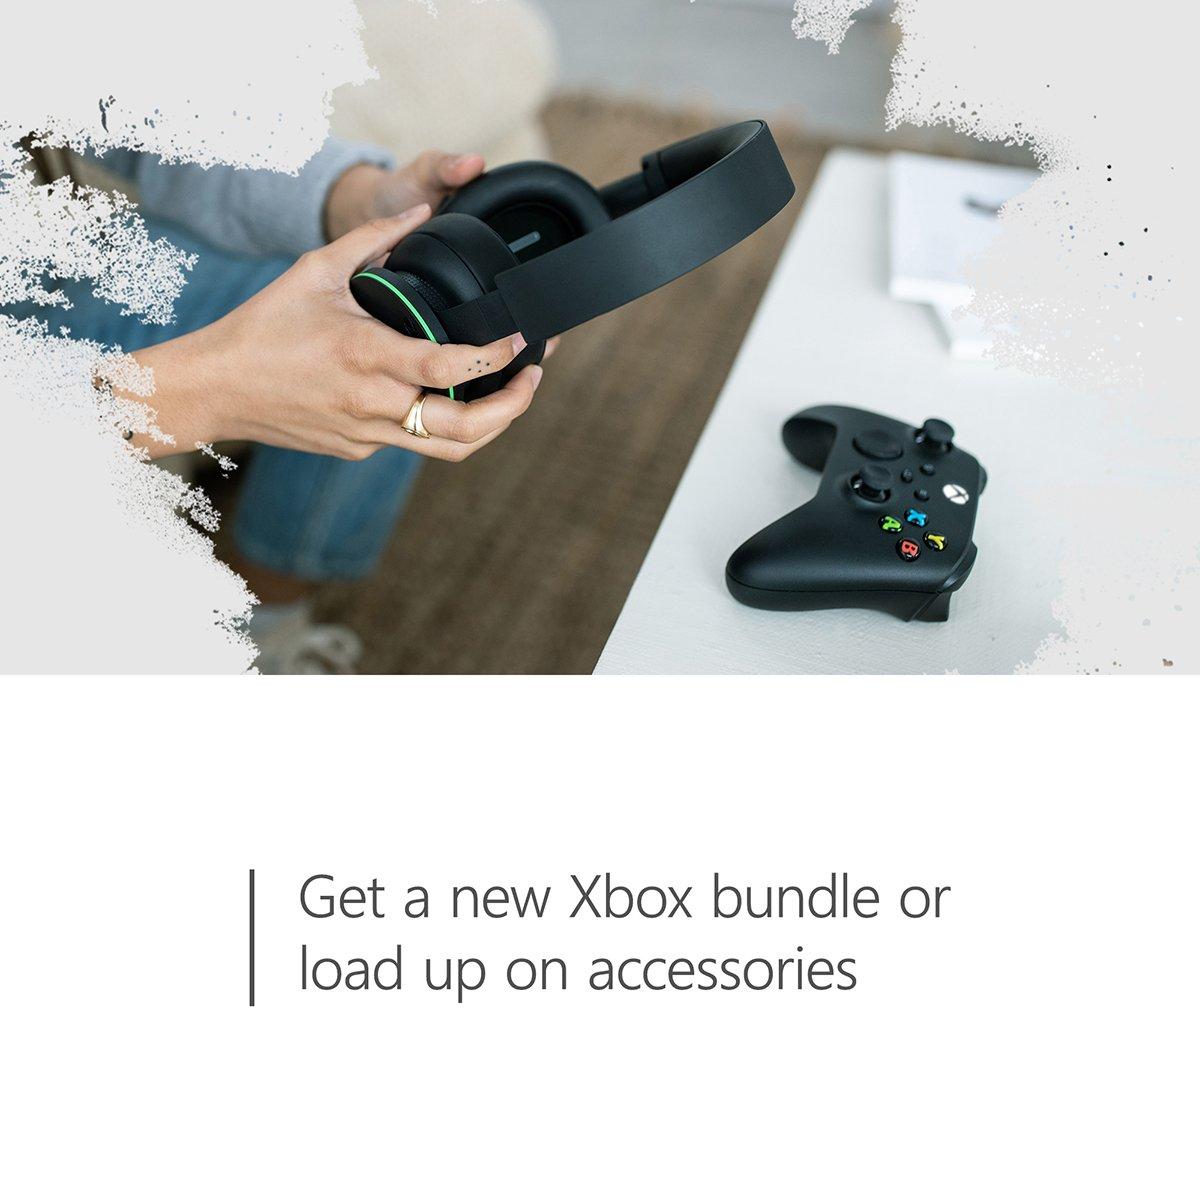 $60 Xbox Gift Card [Digital Code]